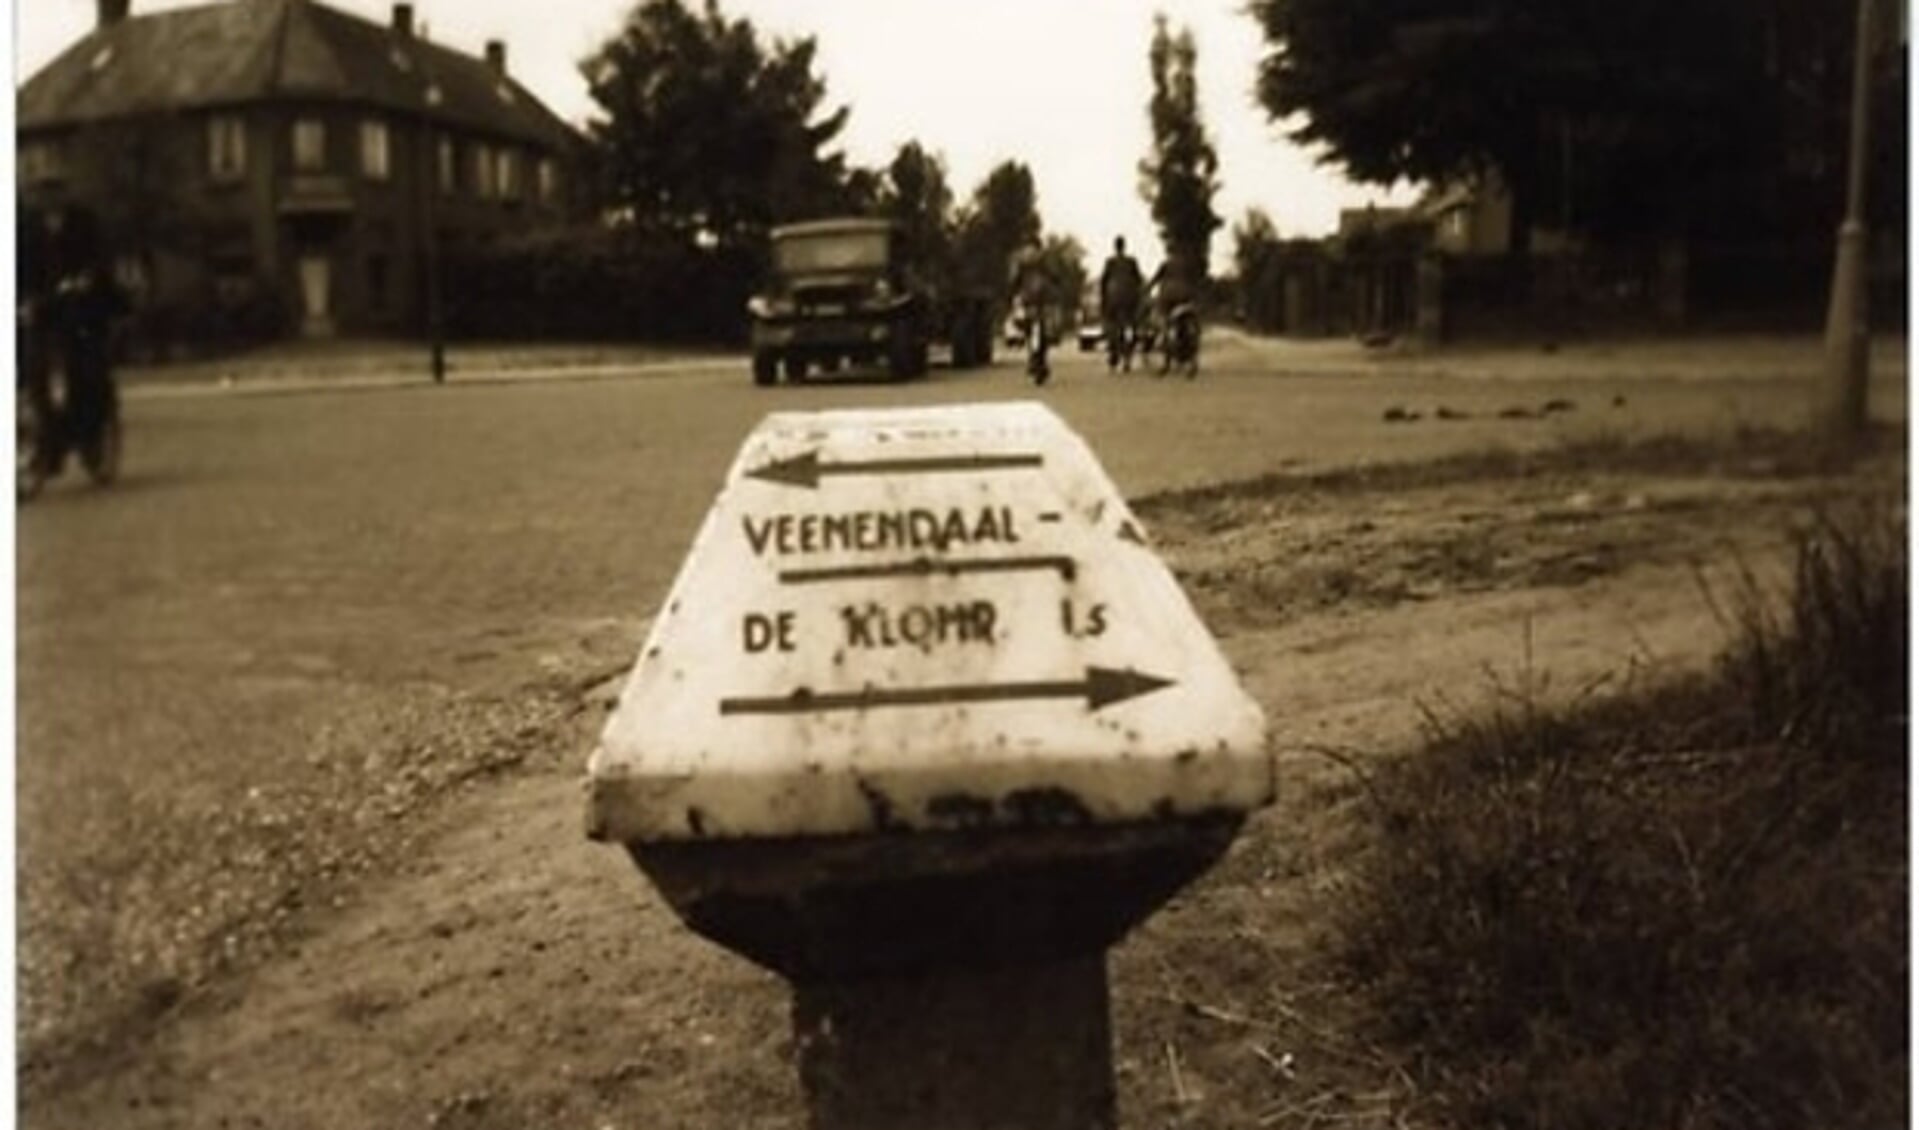 De kruising met de huidige Prins Bernhardlaan/Buurtlaan/Stationstraat/Blauwgras waar het schietincident plaatsvond en waarbij drie doden waren te betreuren. (Foto uit 1950/Jan Bouman)